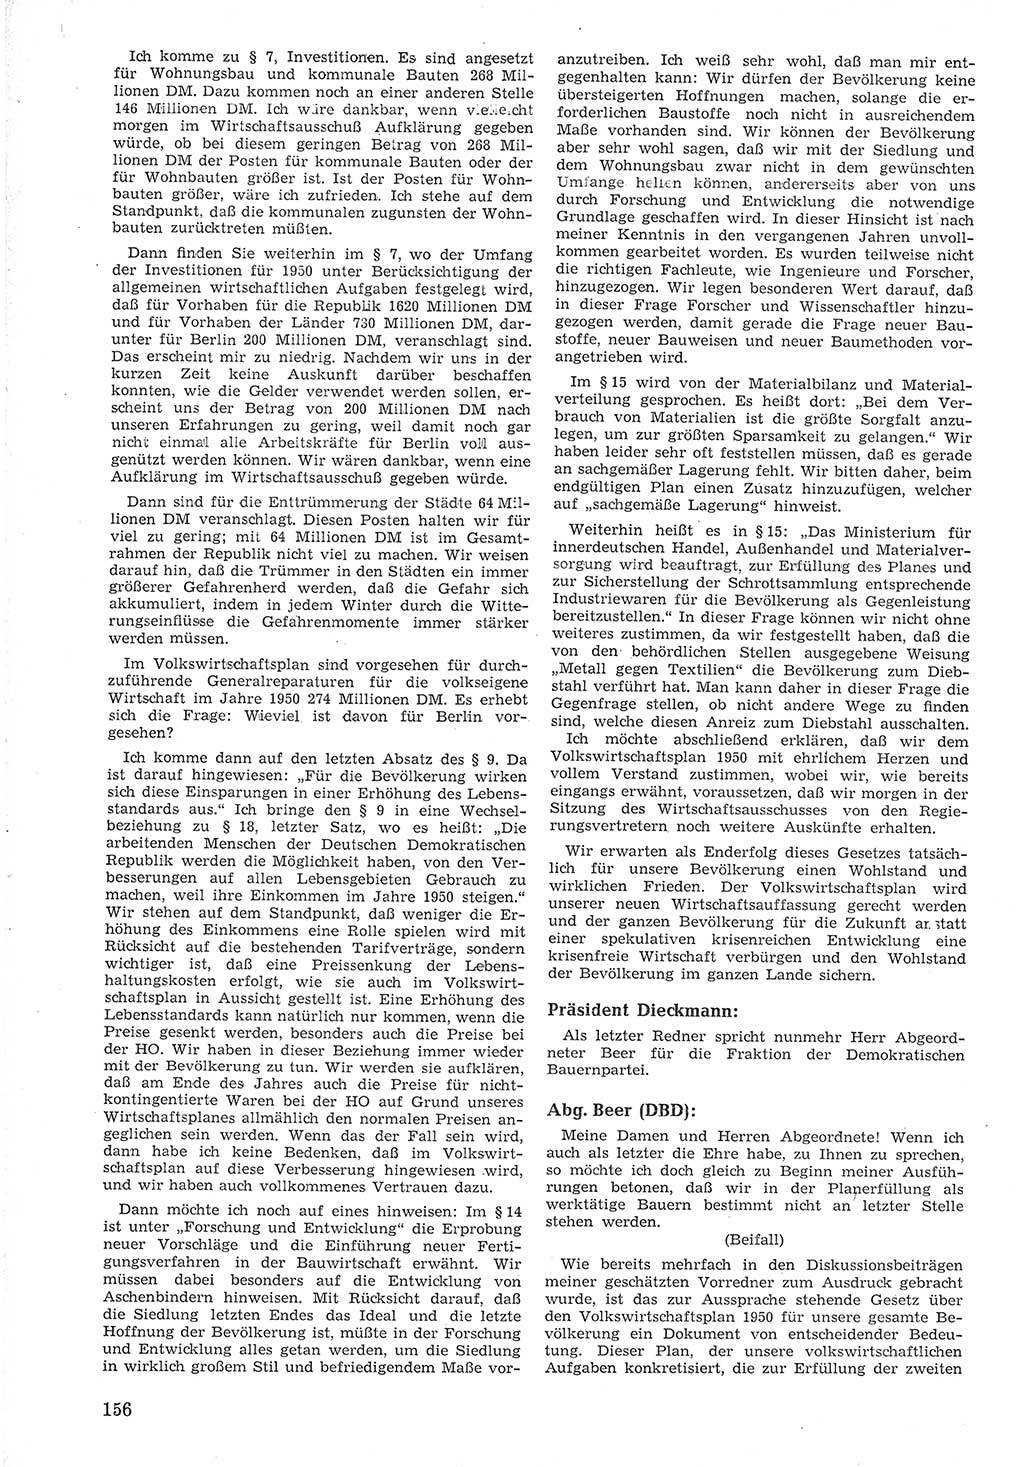 Provisorische Volkskammer (VK) der Deutschen Demokratischen Republik (DDR) 1949-1950, Dokument 168 (Prov. VK DDR 1949-1950, Dok. 168)